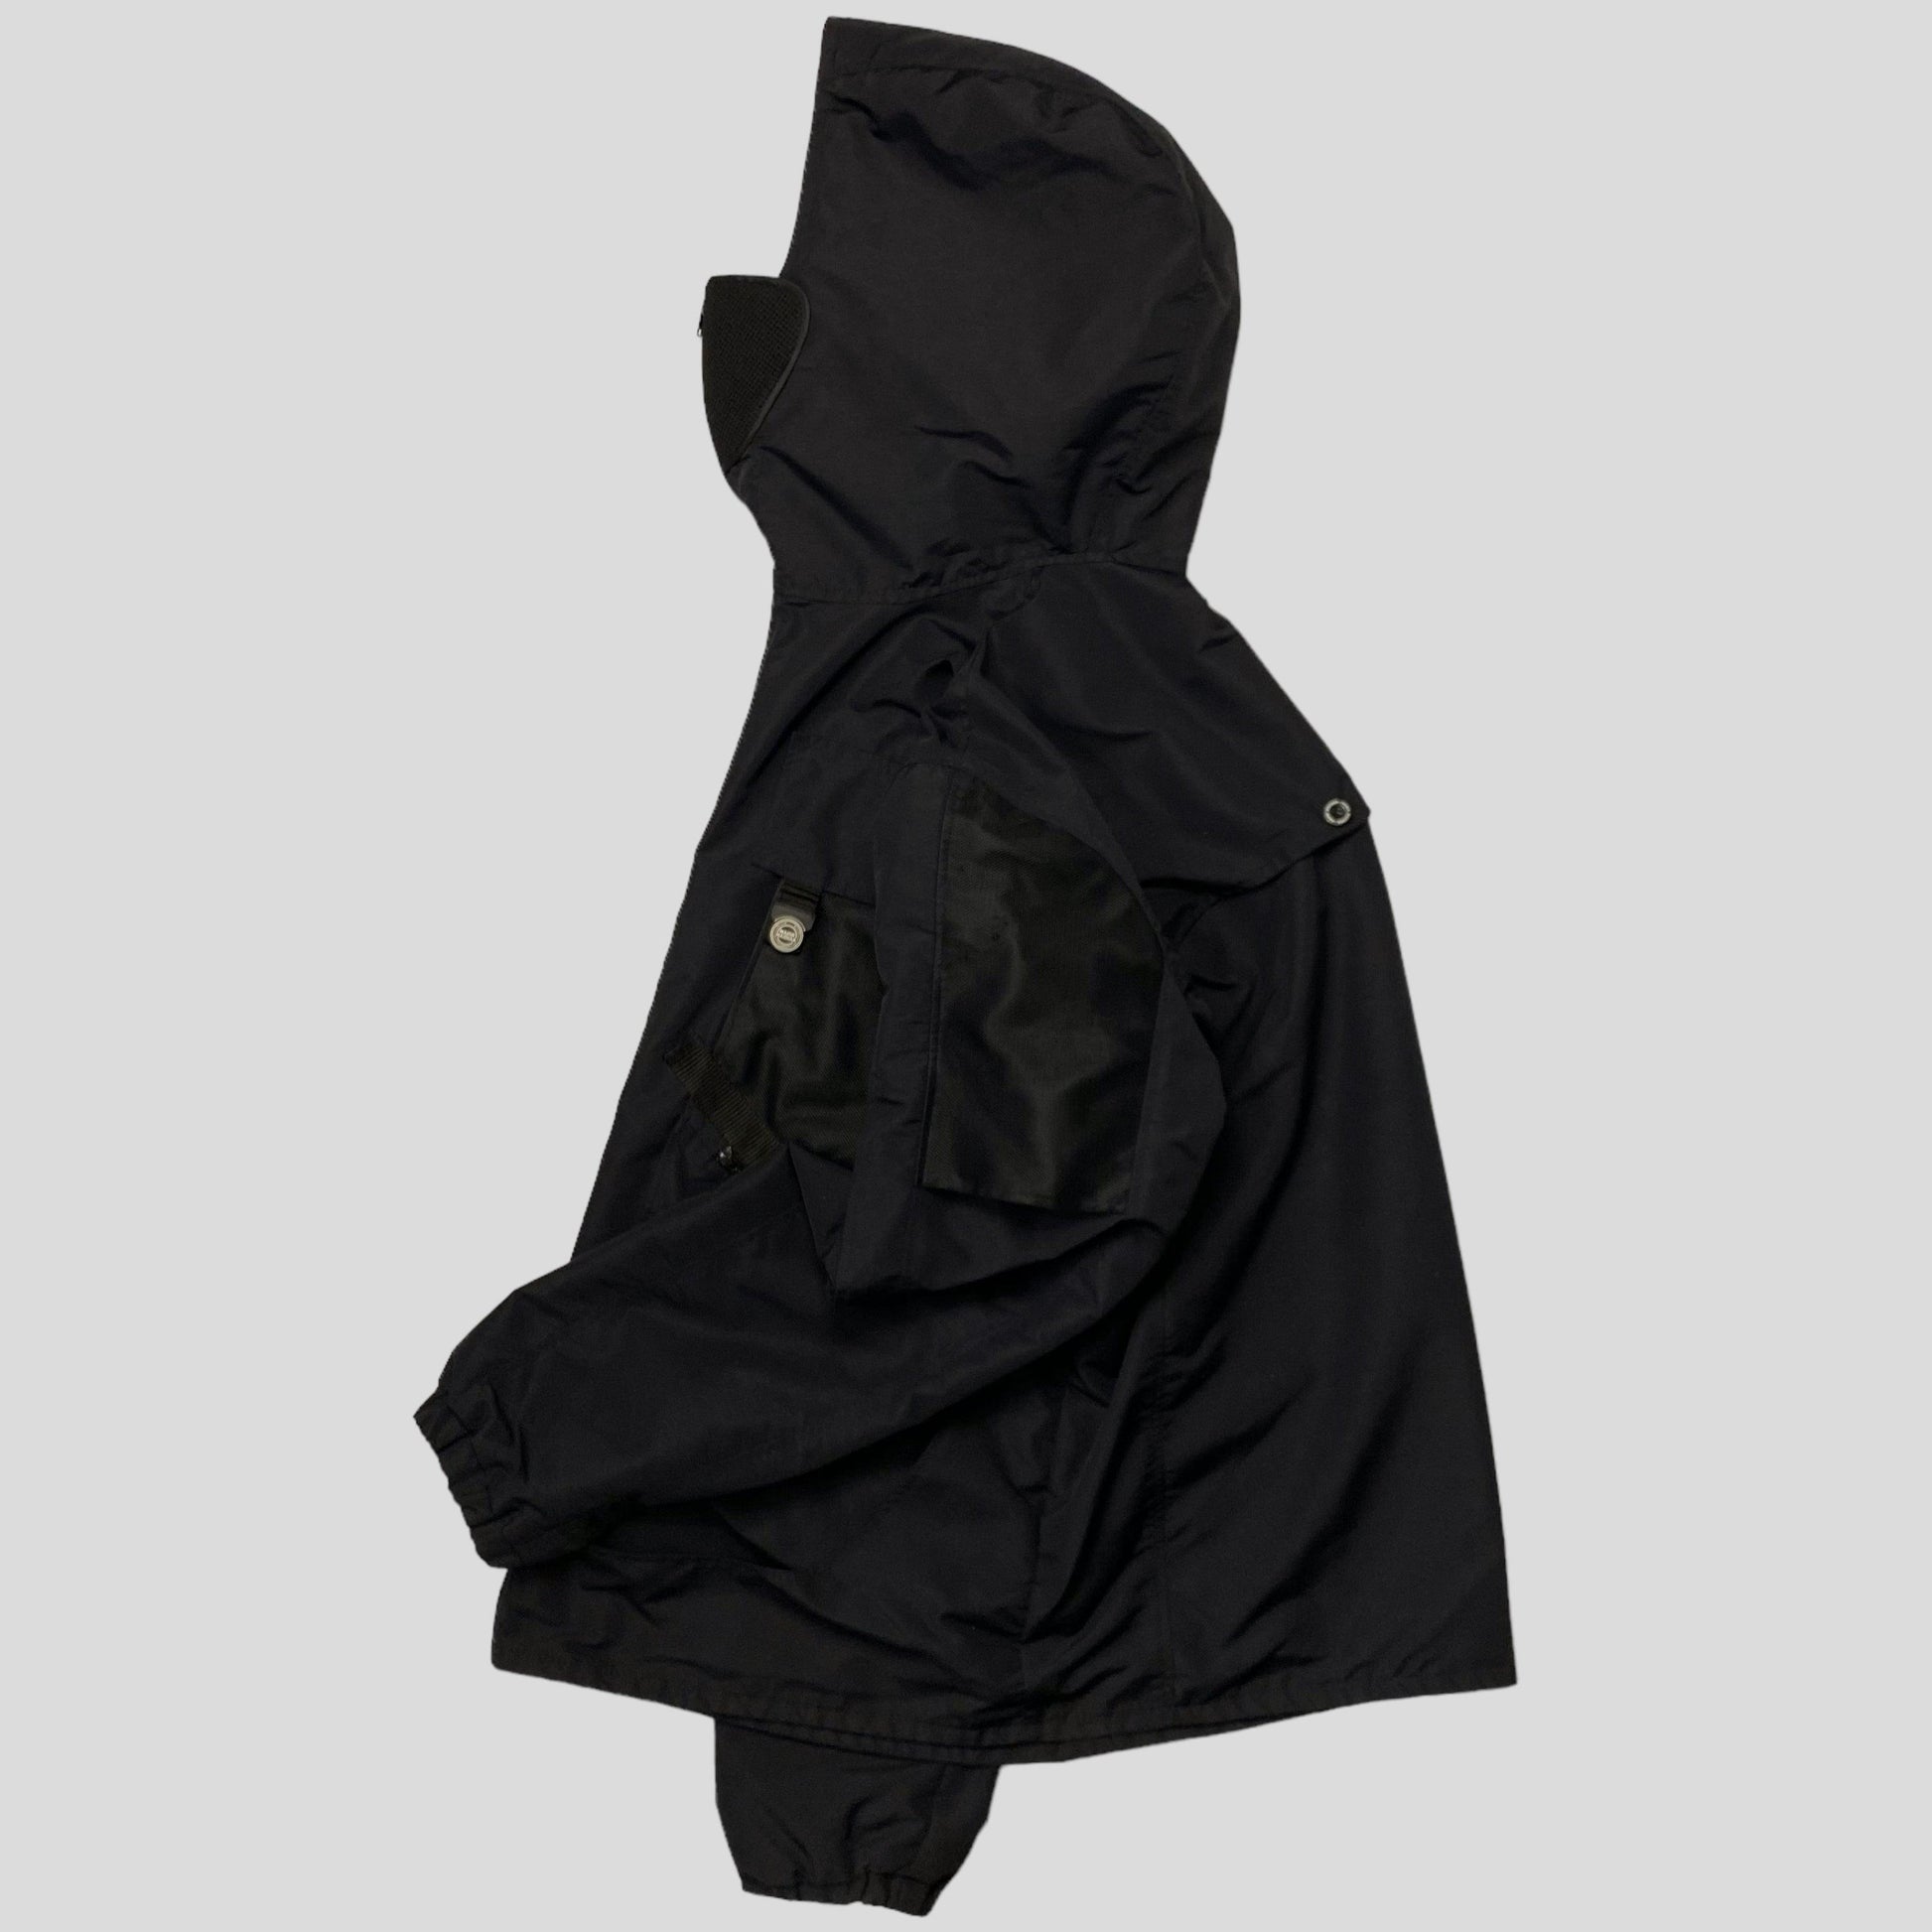 Nasir Mazhar x Skepta 2015 Riot Mask Jacket - XL/XXL - Known Source